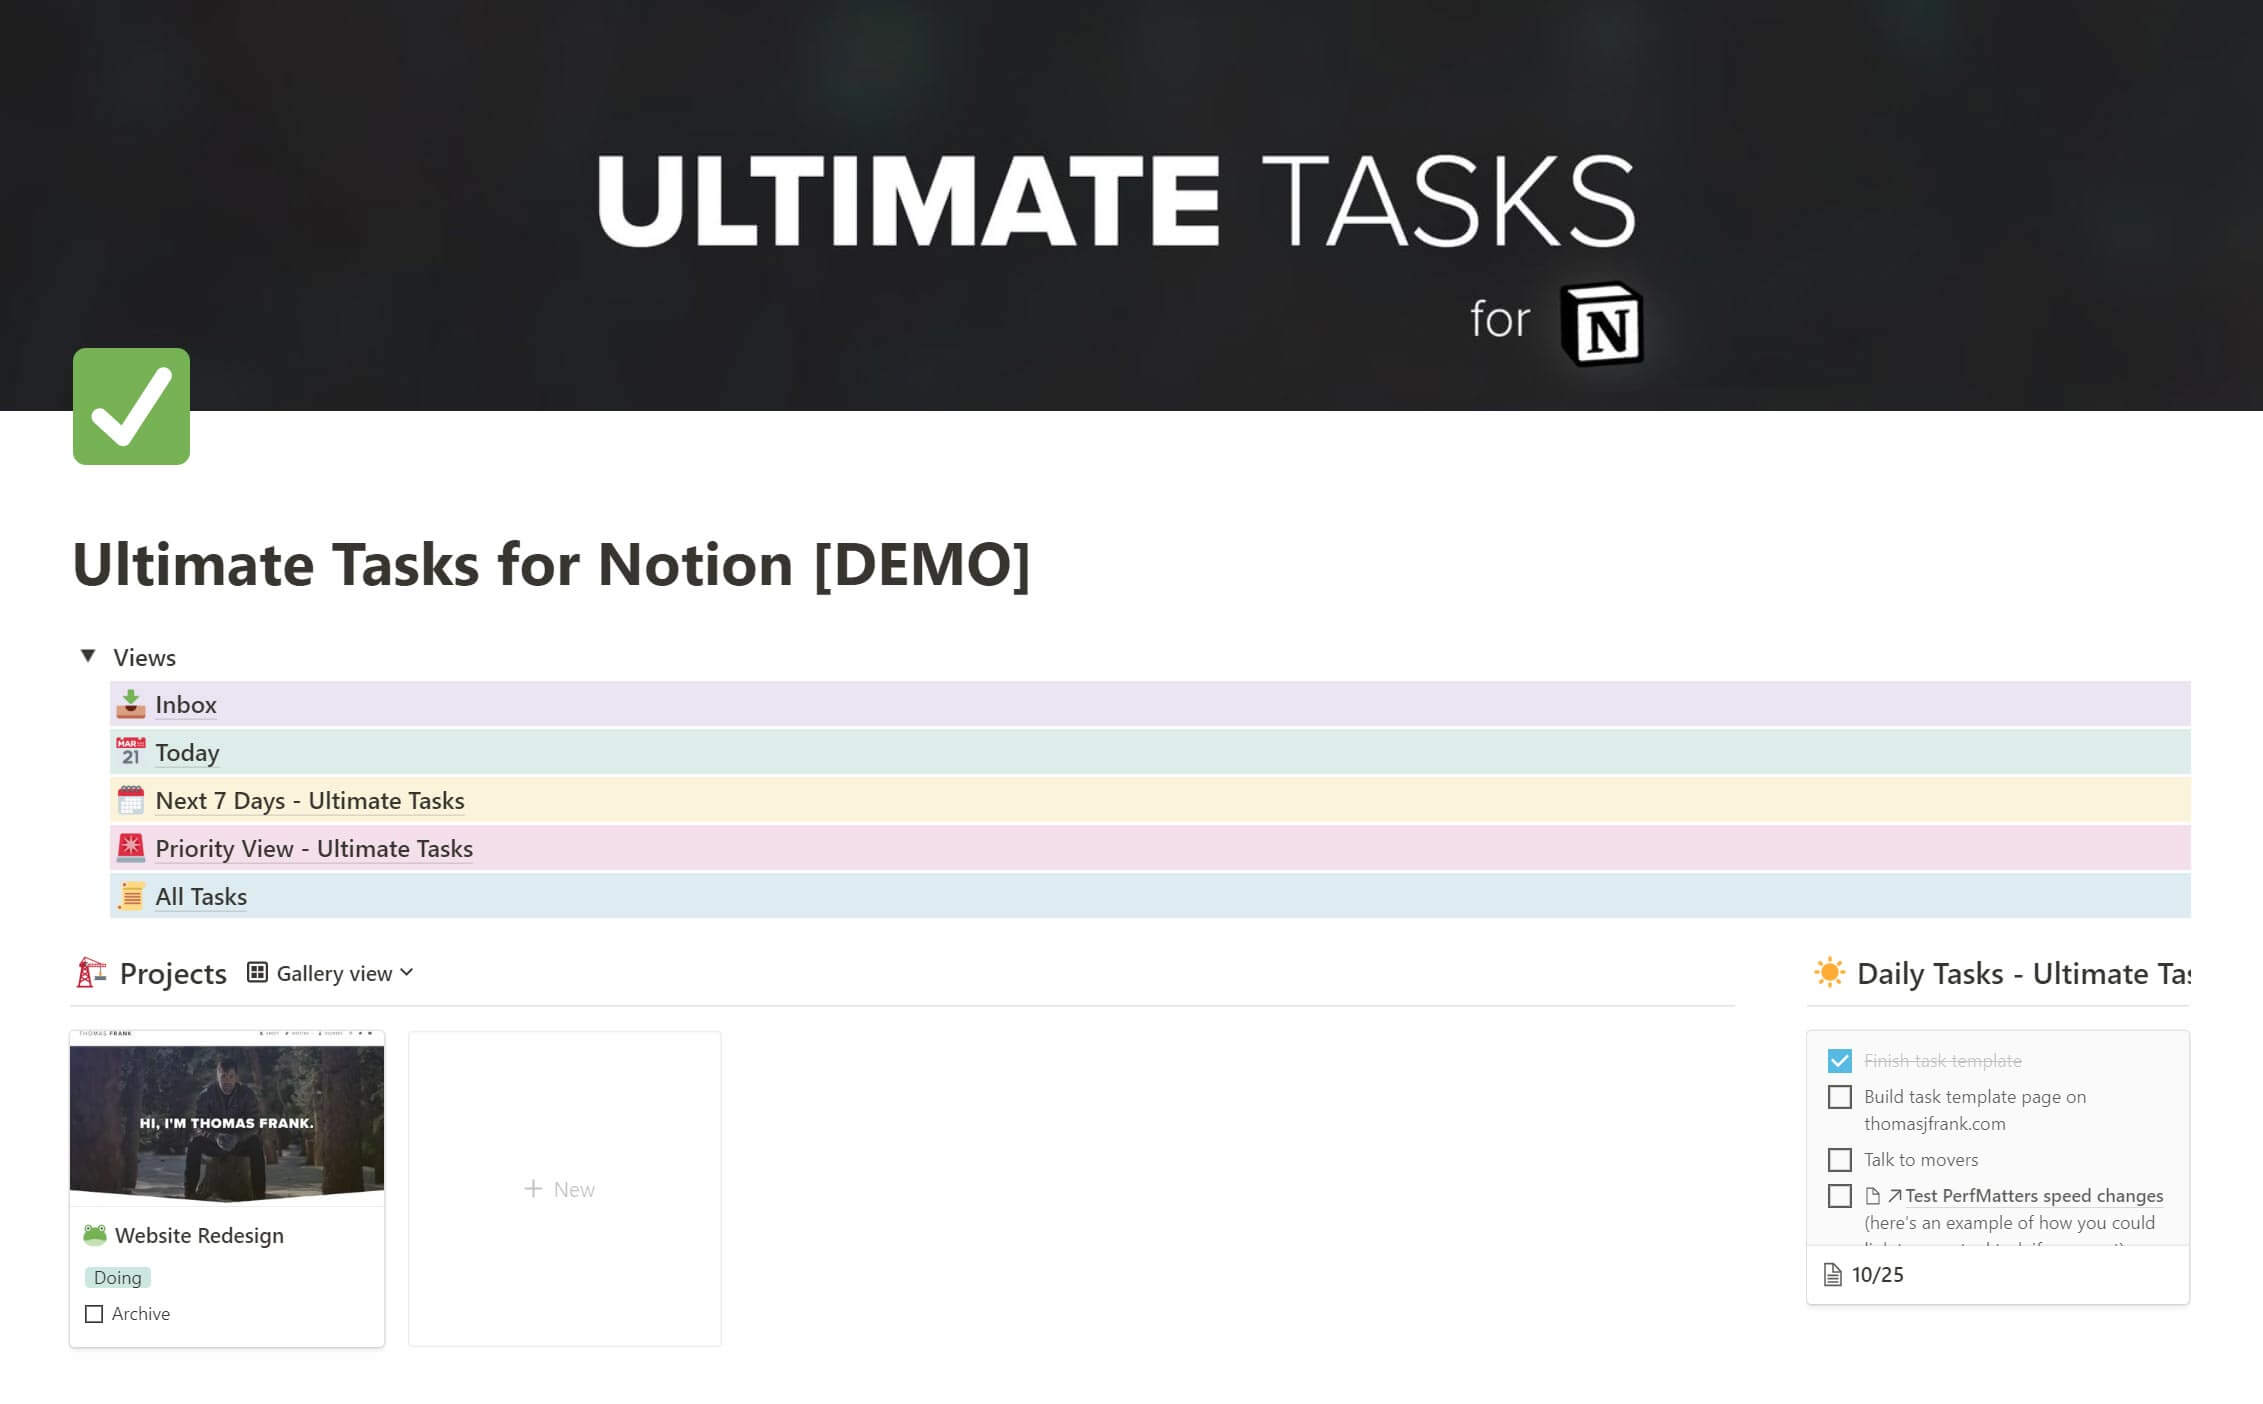 Ultimate Tasks Overview